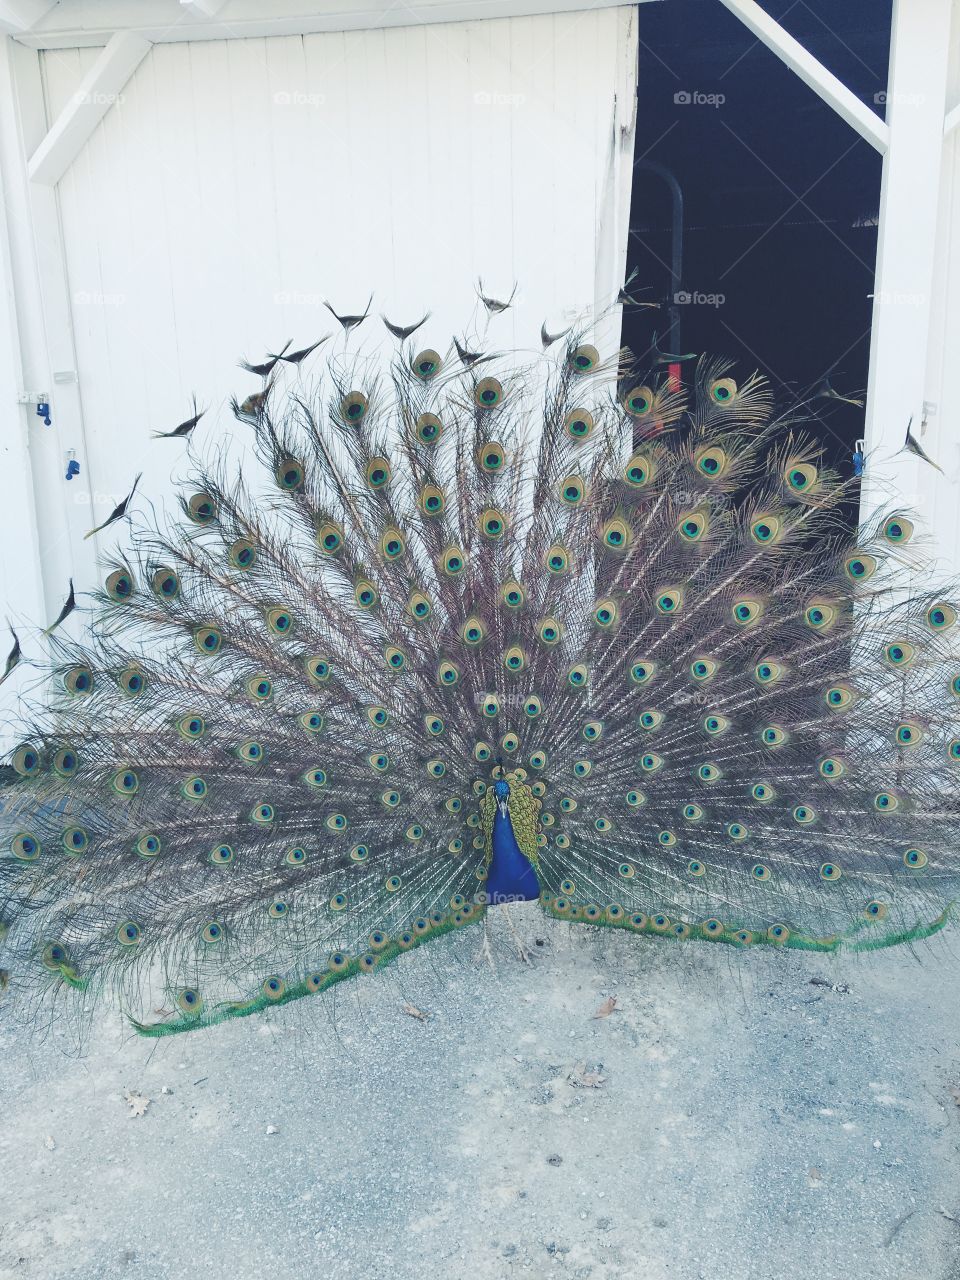 Peacock at farm 